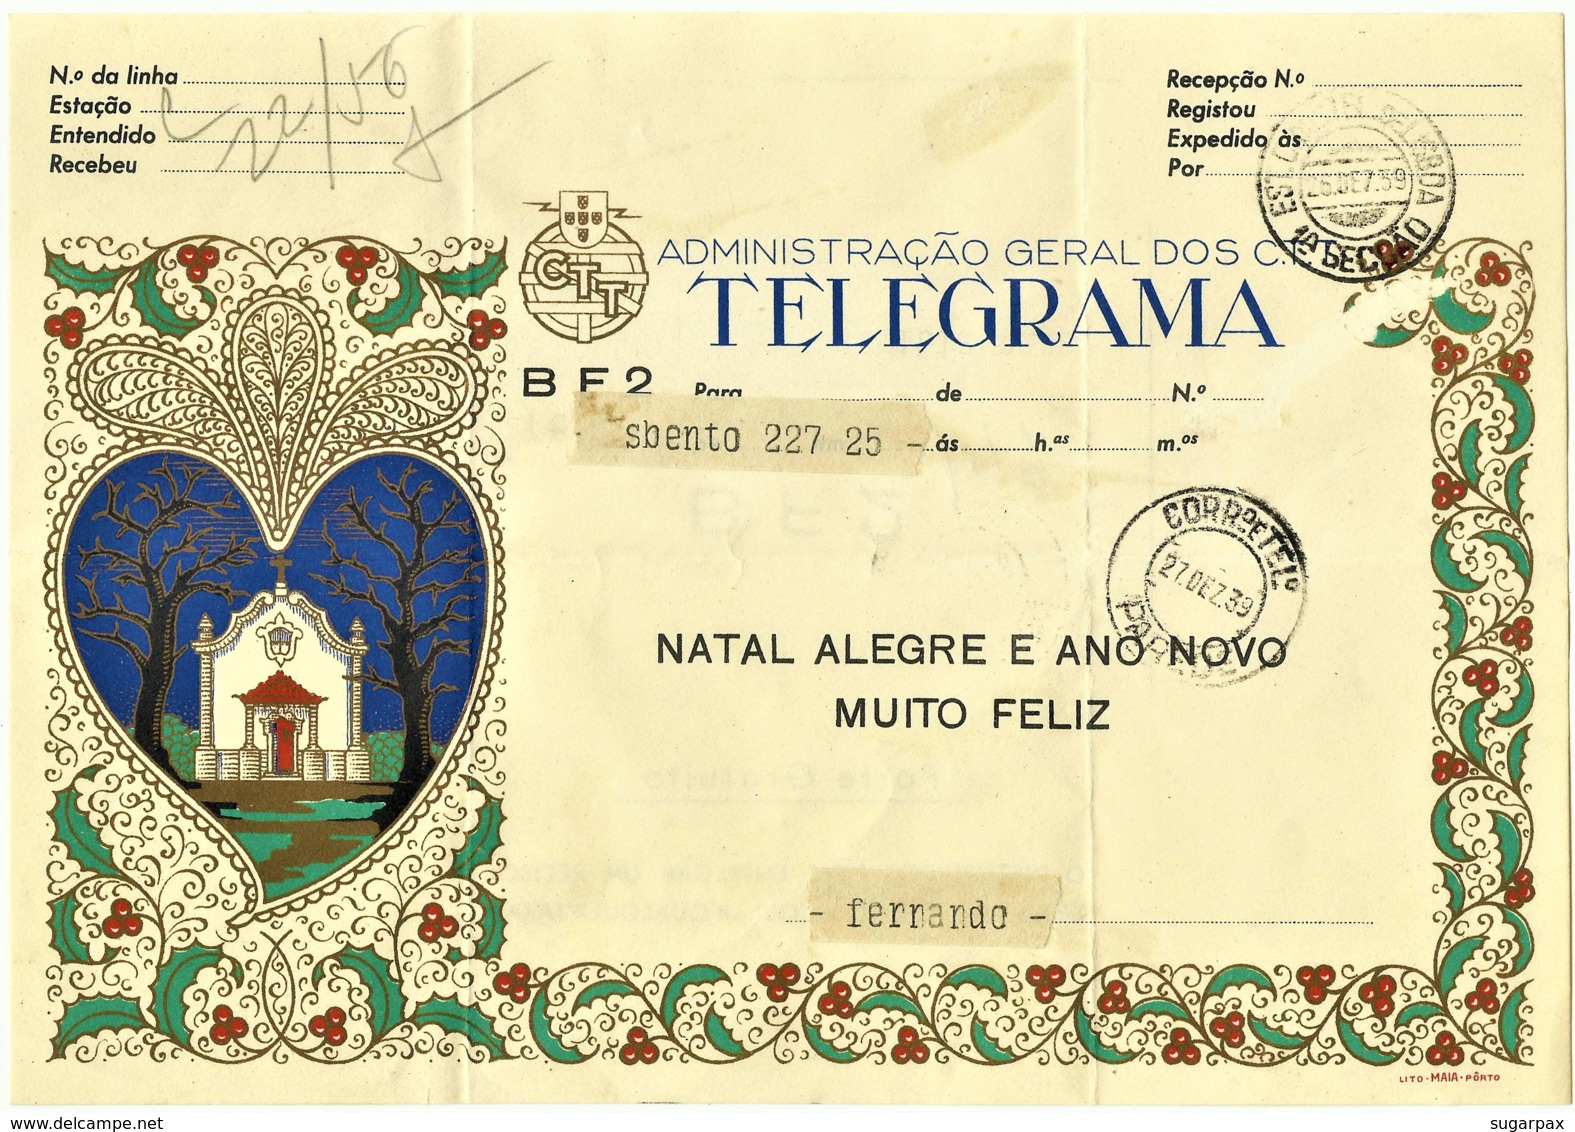 BF2 - 1959 - TELEGRAMA - Administração Geral Dos C.T.T. - NATAL ALEGRE E ANO NOVO MUITO FELIZ - Portugal - Lettres & Documents